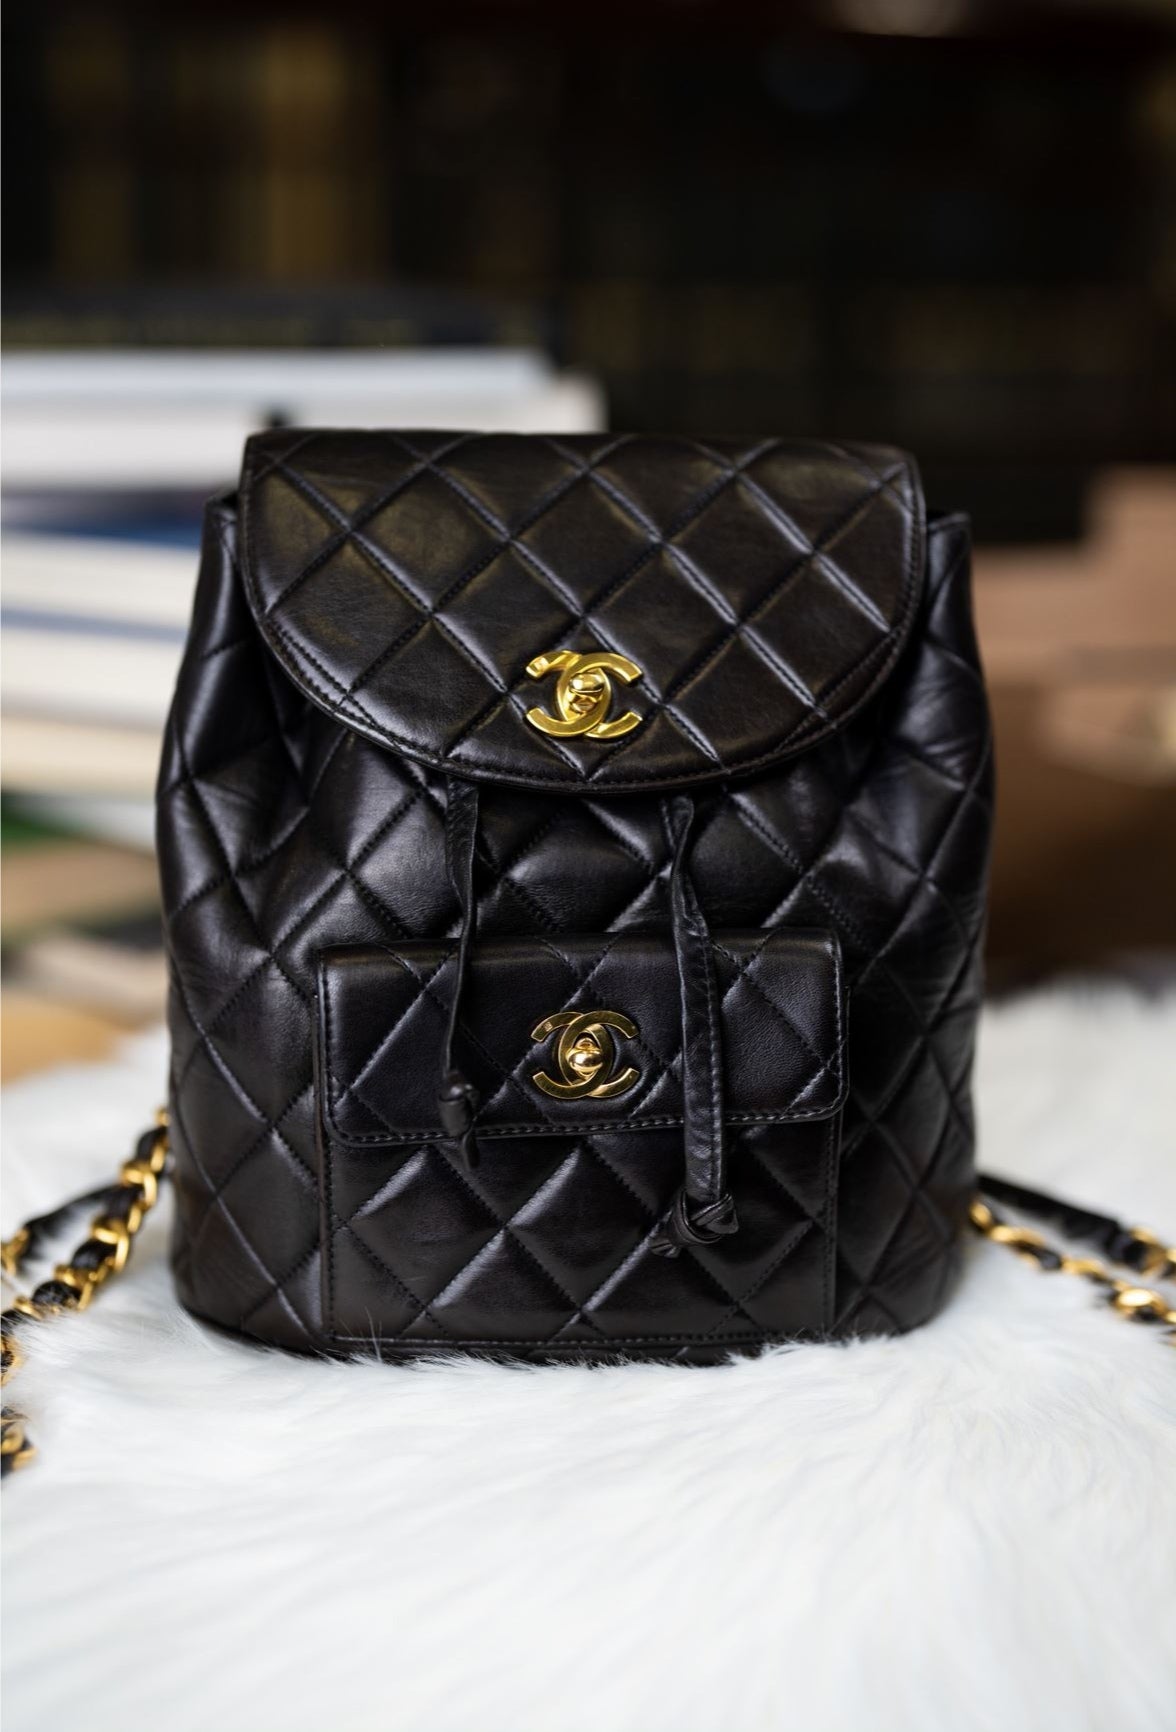 Chanel Vintage backpack black lambskin goldplatedVintageUnited